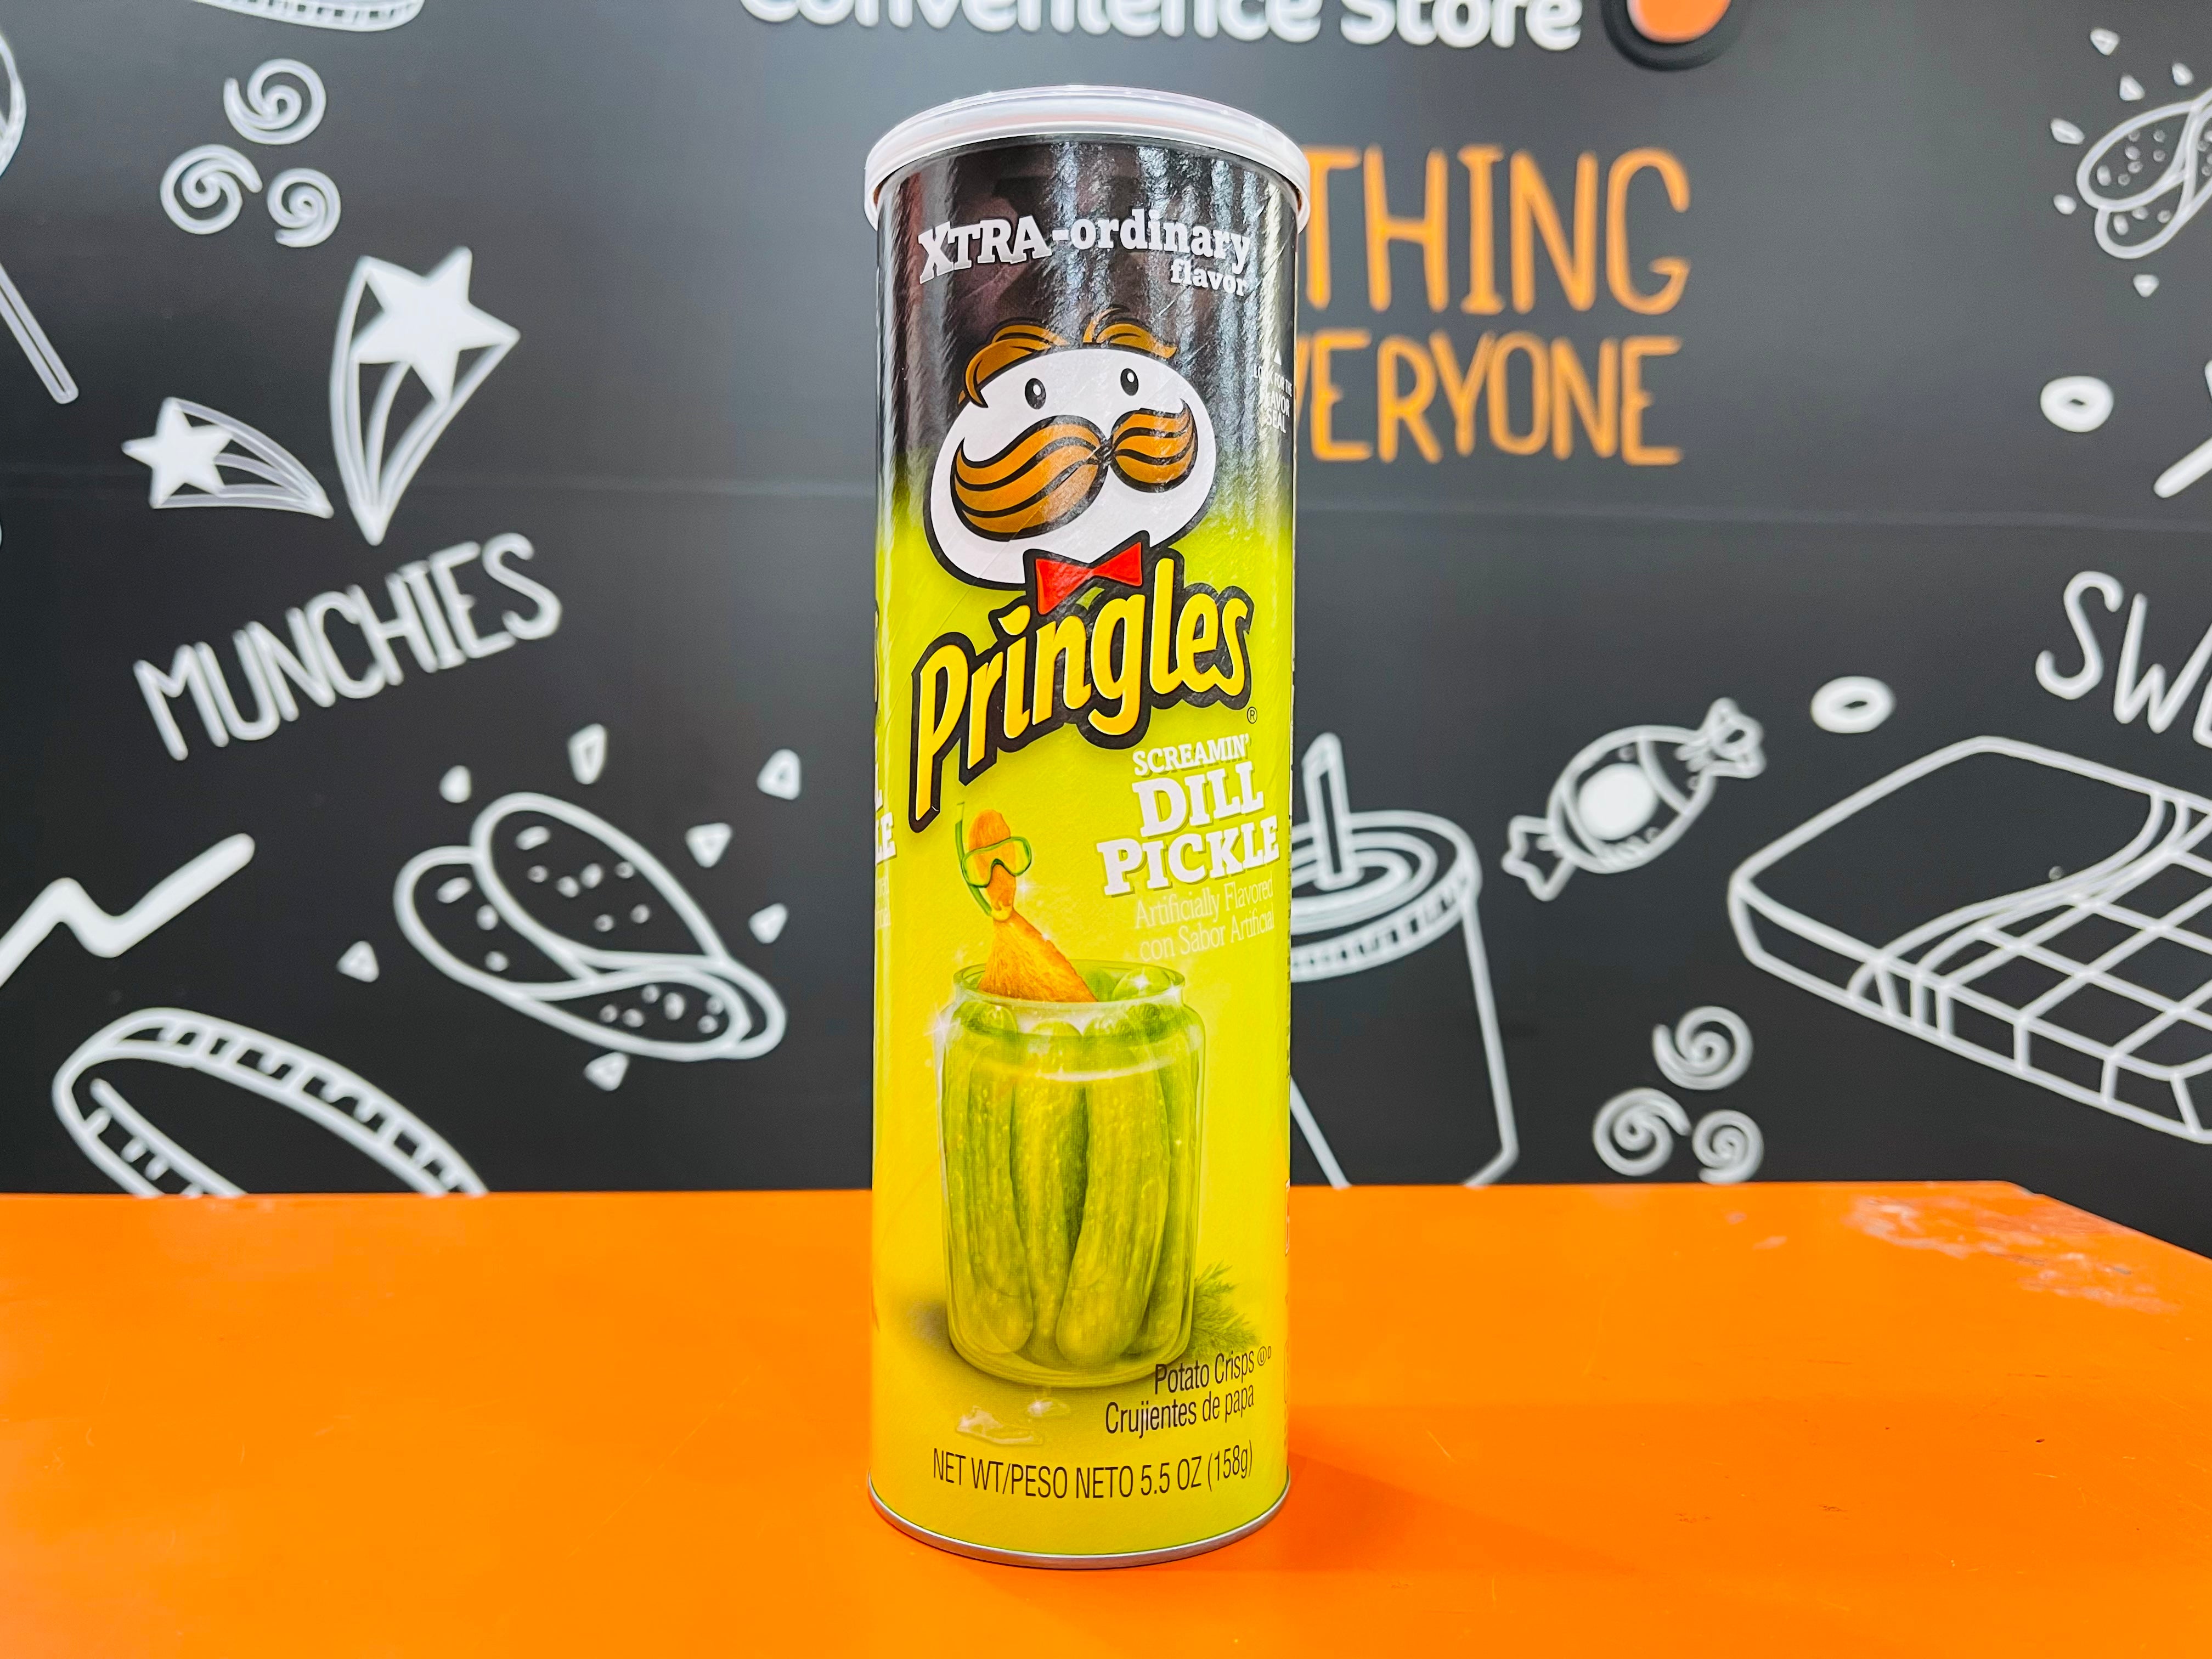 Pringles Screamin Dill Pickle 158g